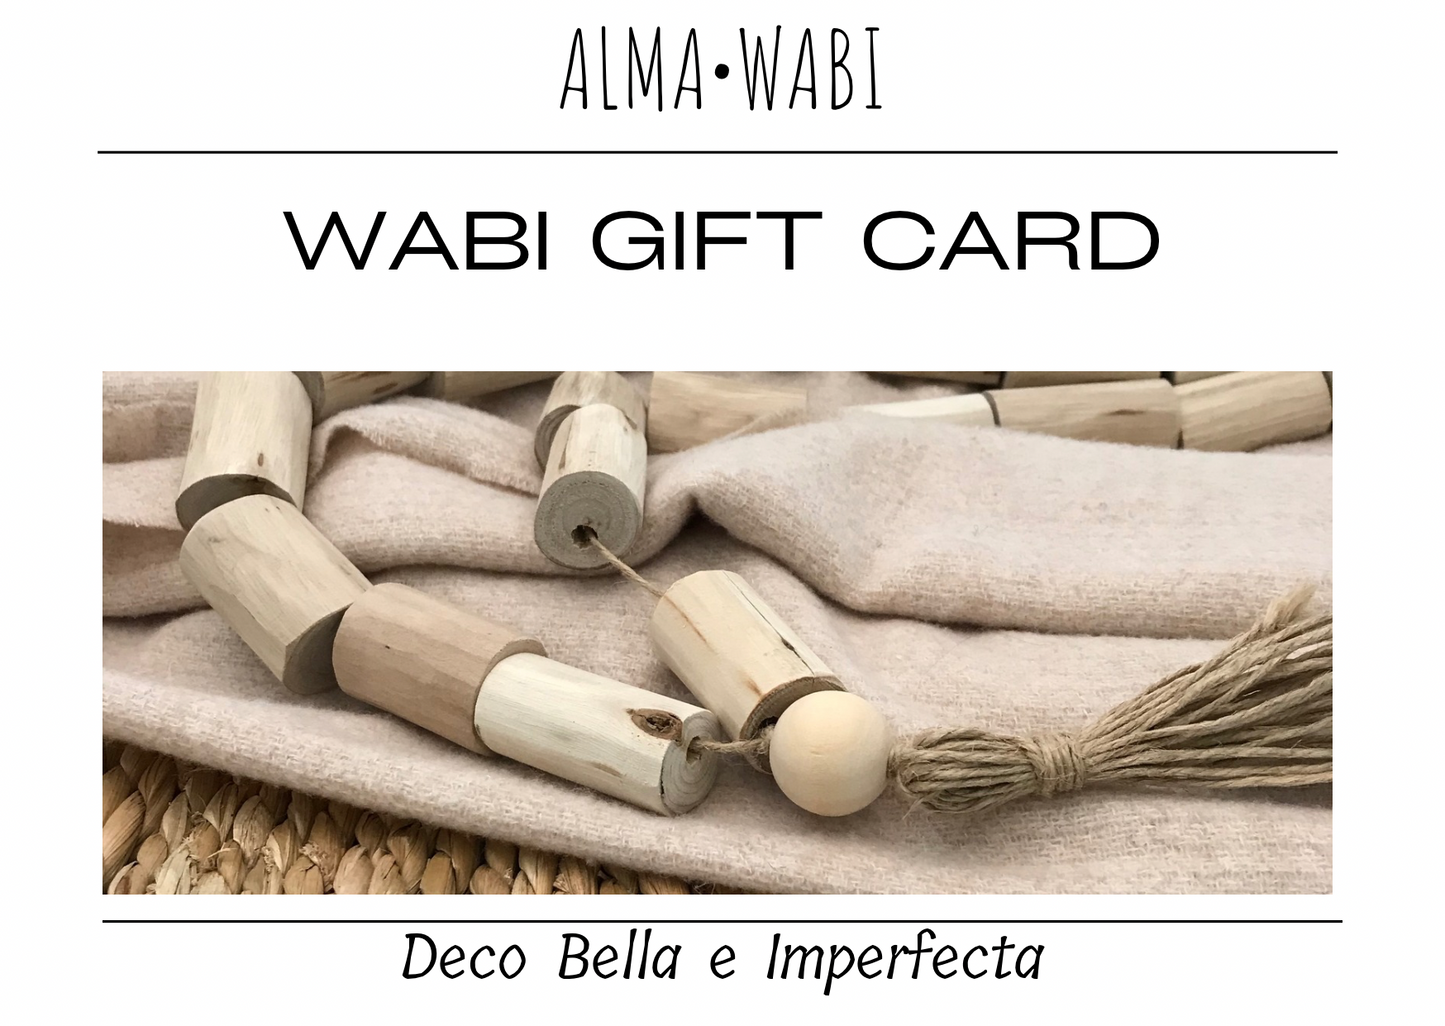 WABI tarjeta de regalo.